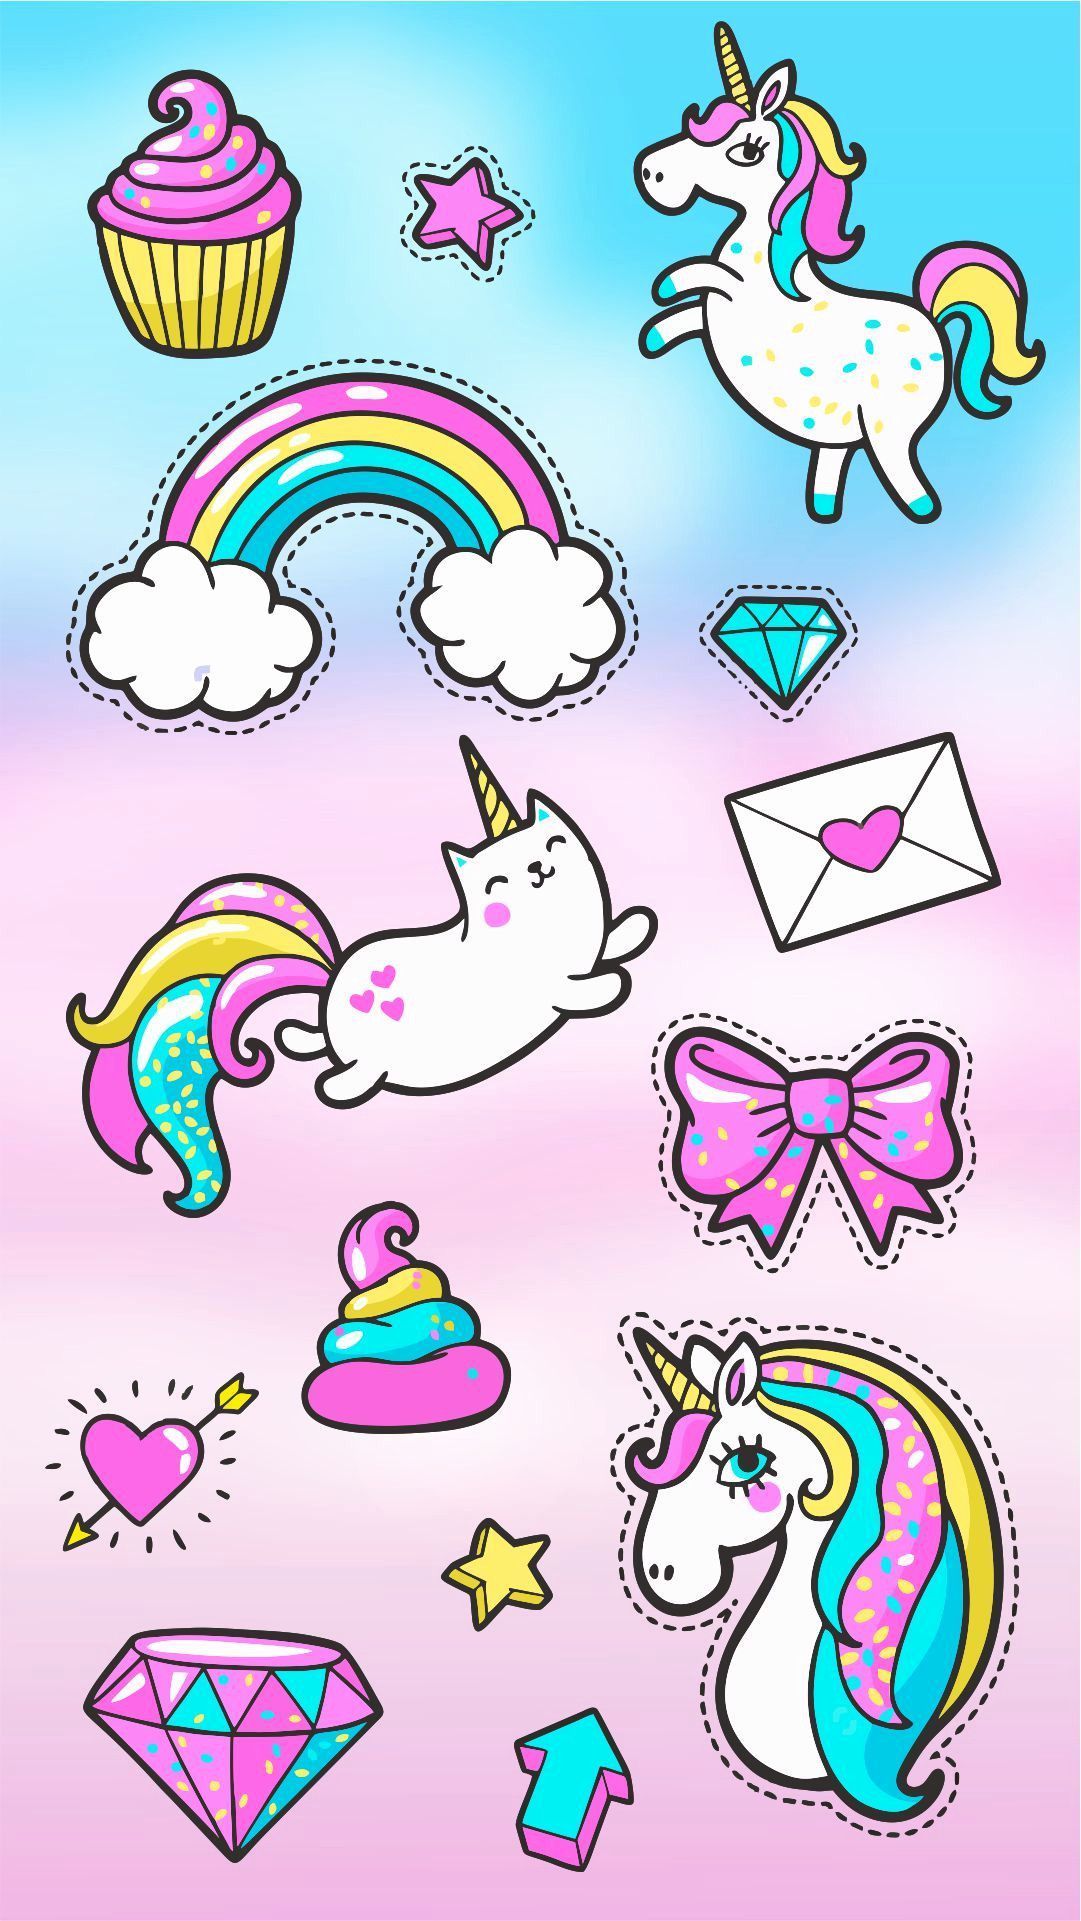 Hình nền unicorn cute đang là một trong những xu hướng được yêu thích nhất hiện nay. Hãy cùng khám phá những lựa chọn đầy cá tính và dễ thương để trang trí cho màn hình điện thoại của bạn.